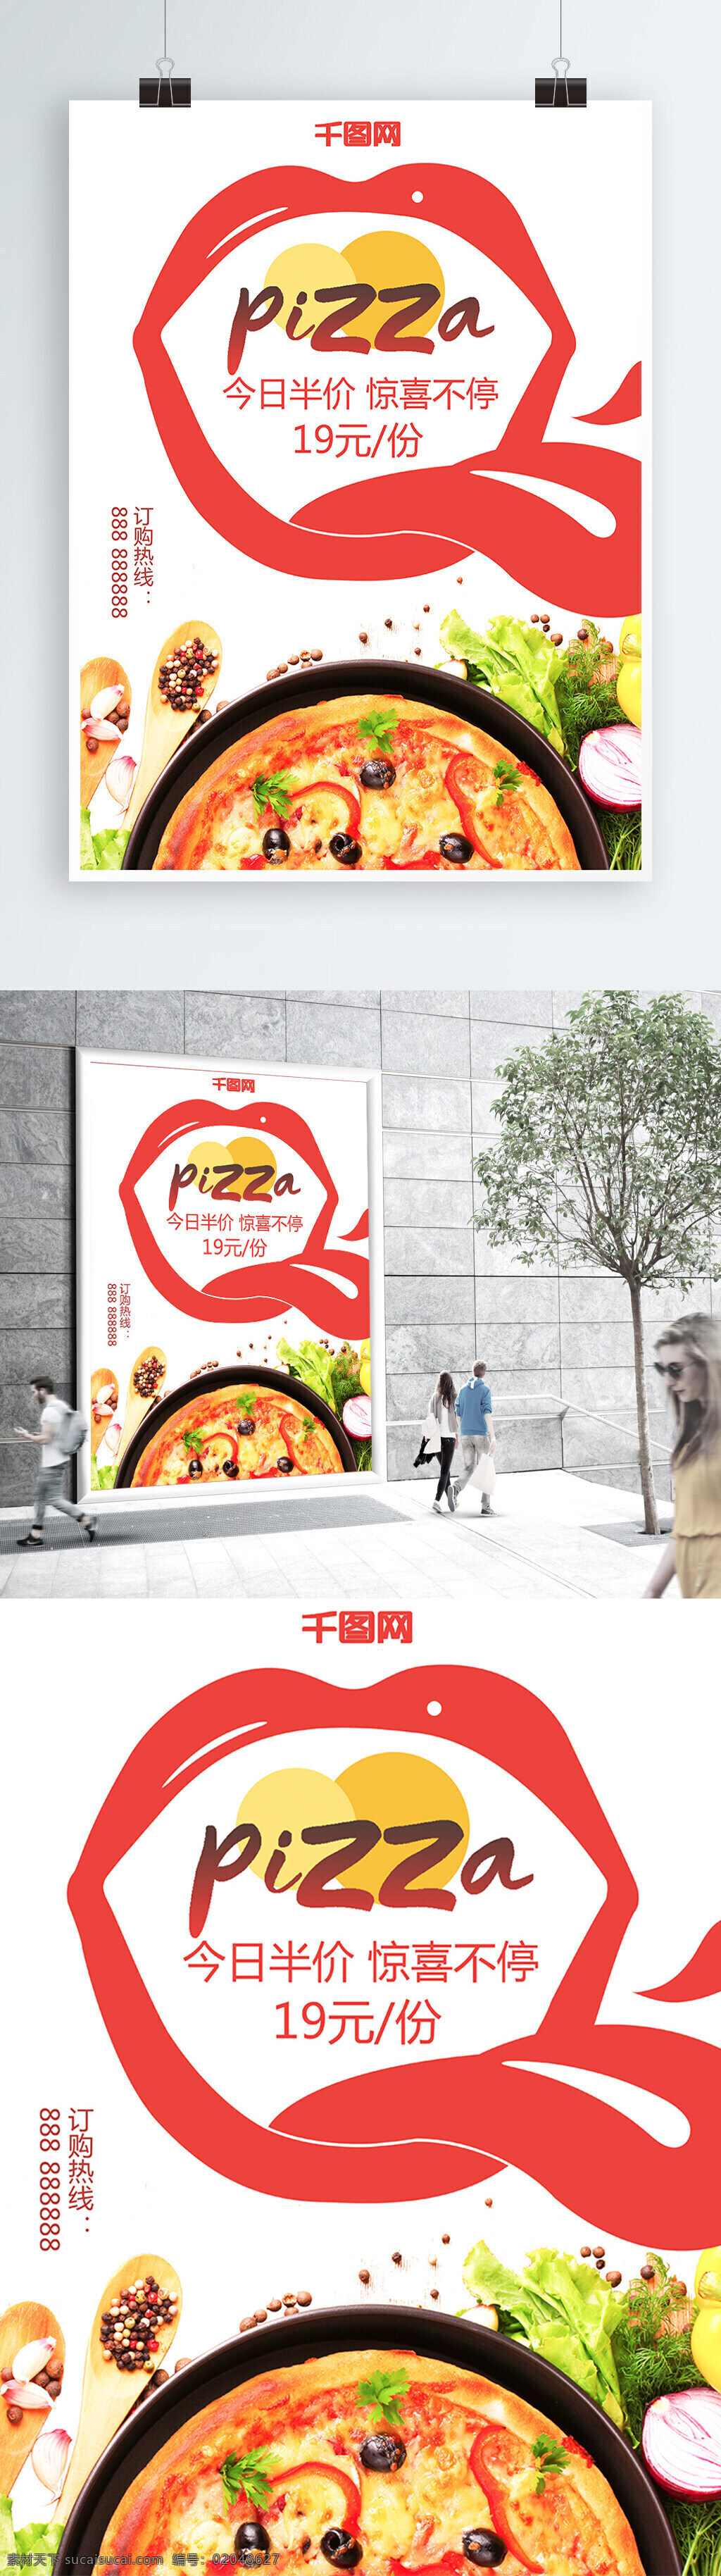 创意 美食 披萨 pizza 今日 半价 促销 海报 创意美食 今日半价 促销海报